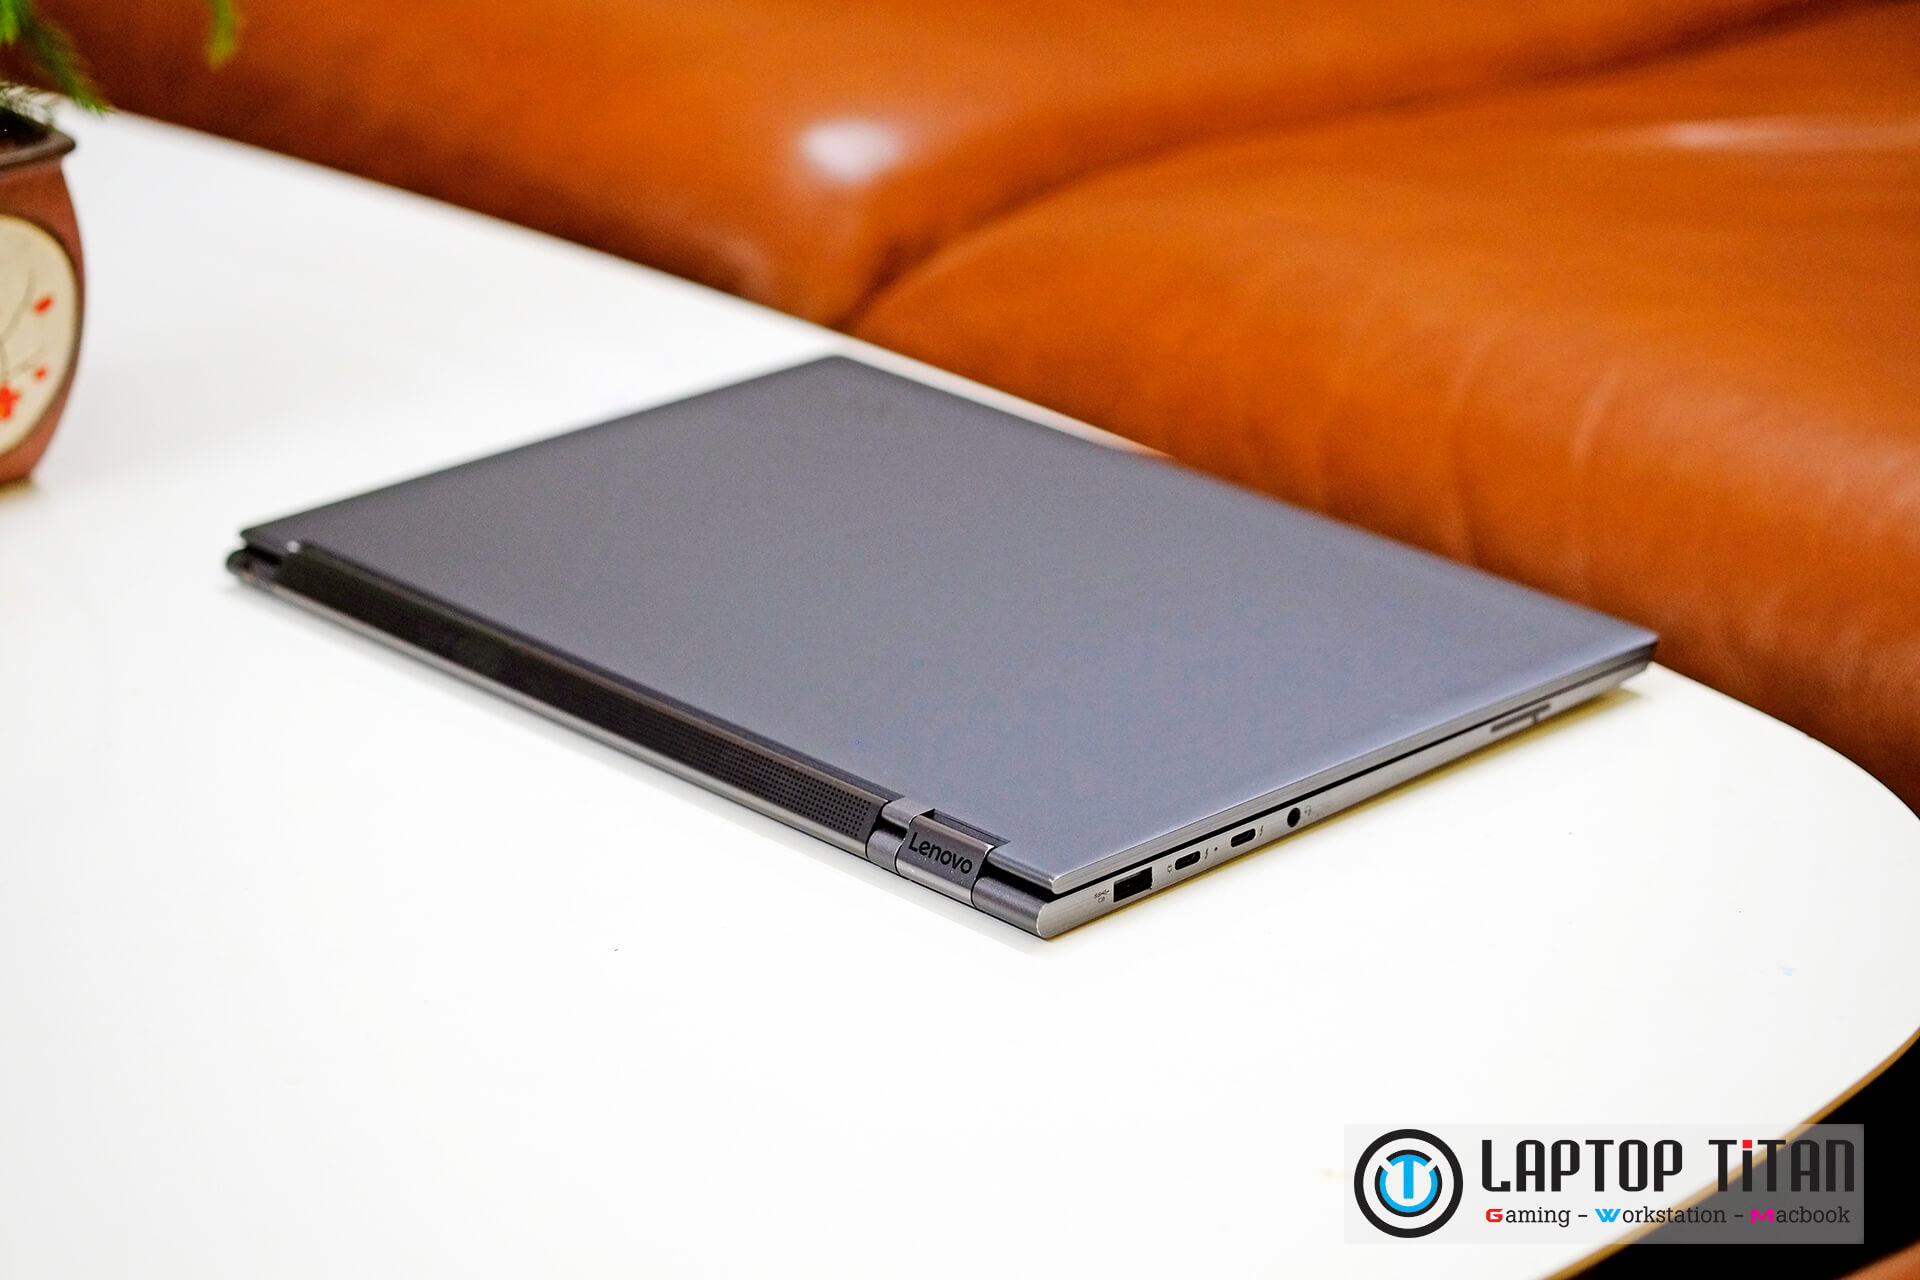 Lenovo Yoga C930 Laptoptitan 06